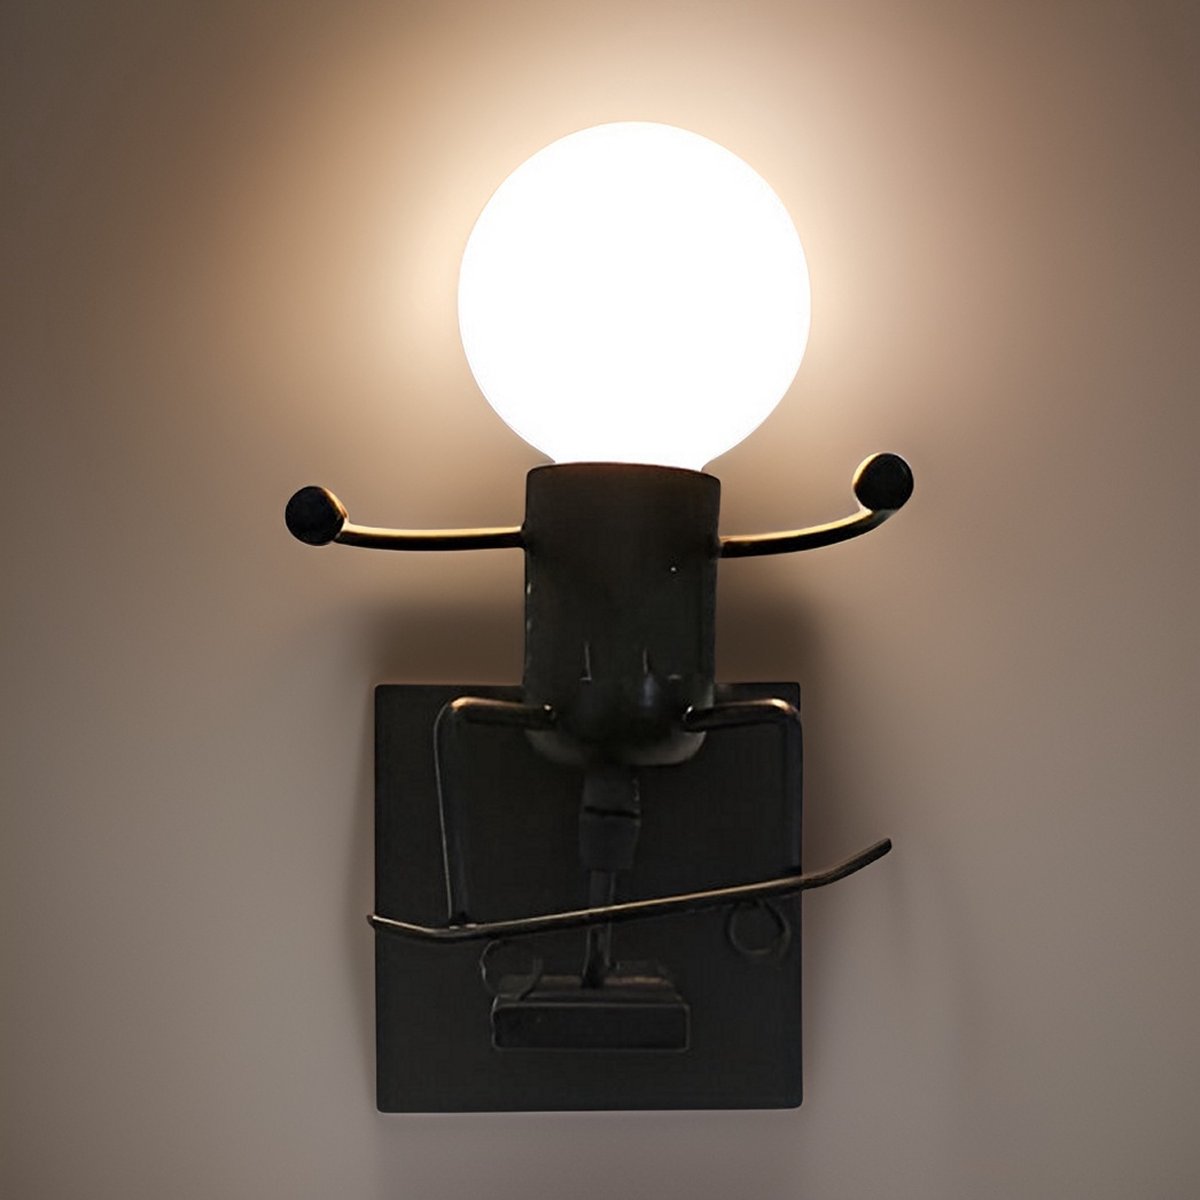 EFD Lighting WL01 - Wandlamp - Modern - Zwart - Wandlamp binnen - Wandlampen Woonkamer, Eetkamer